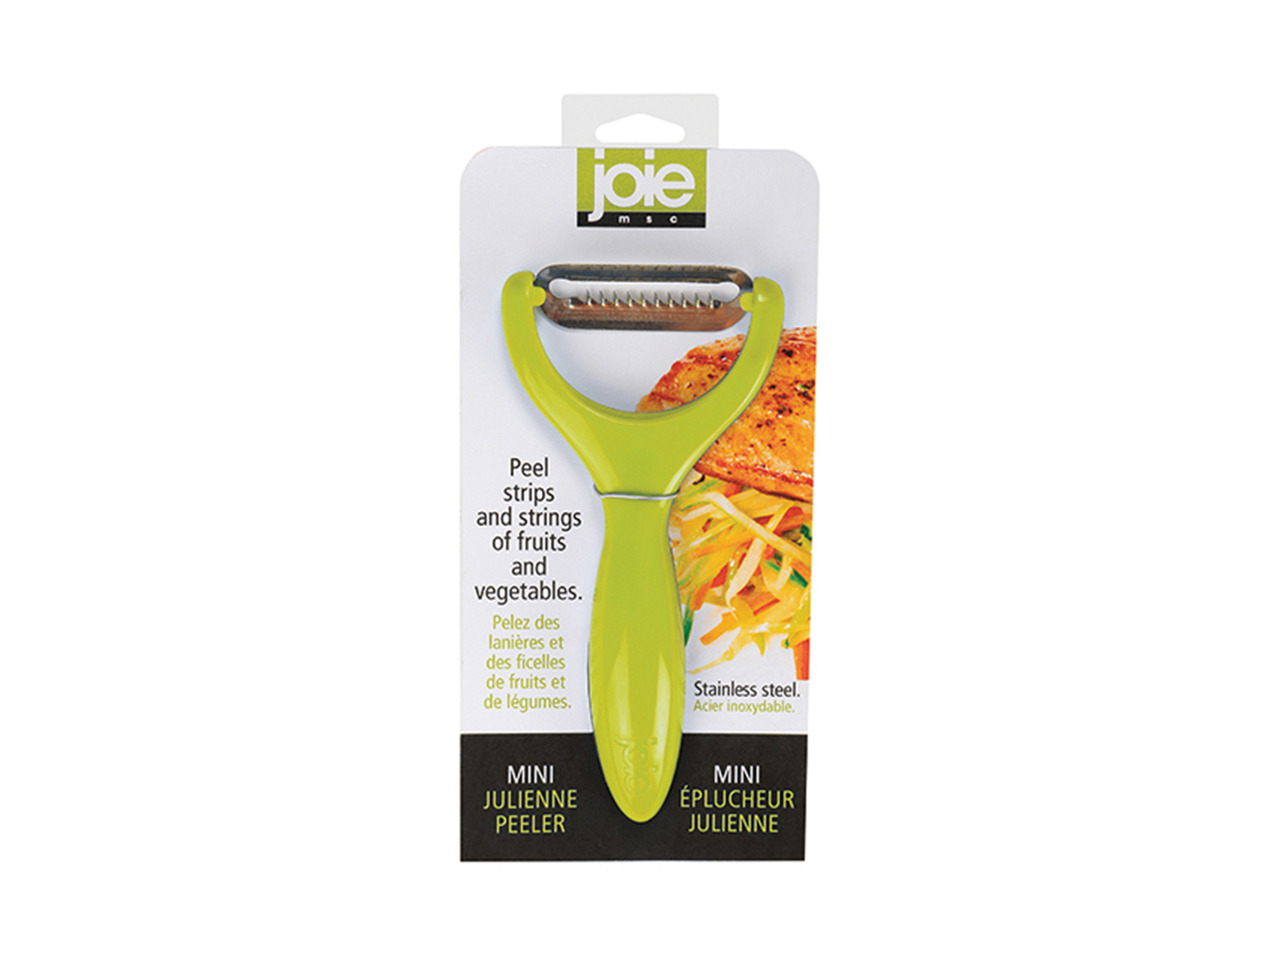 Joie Summer Kitchen Gadgets1